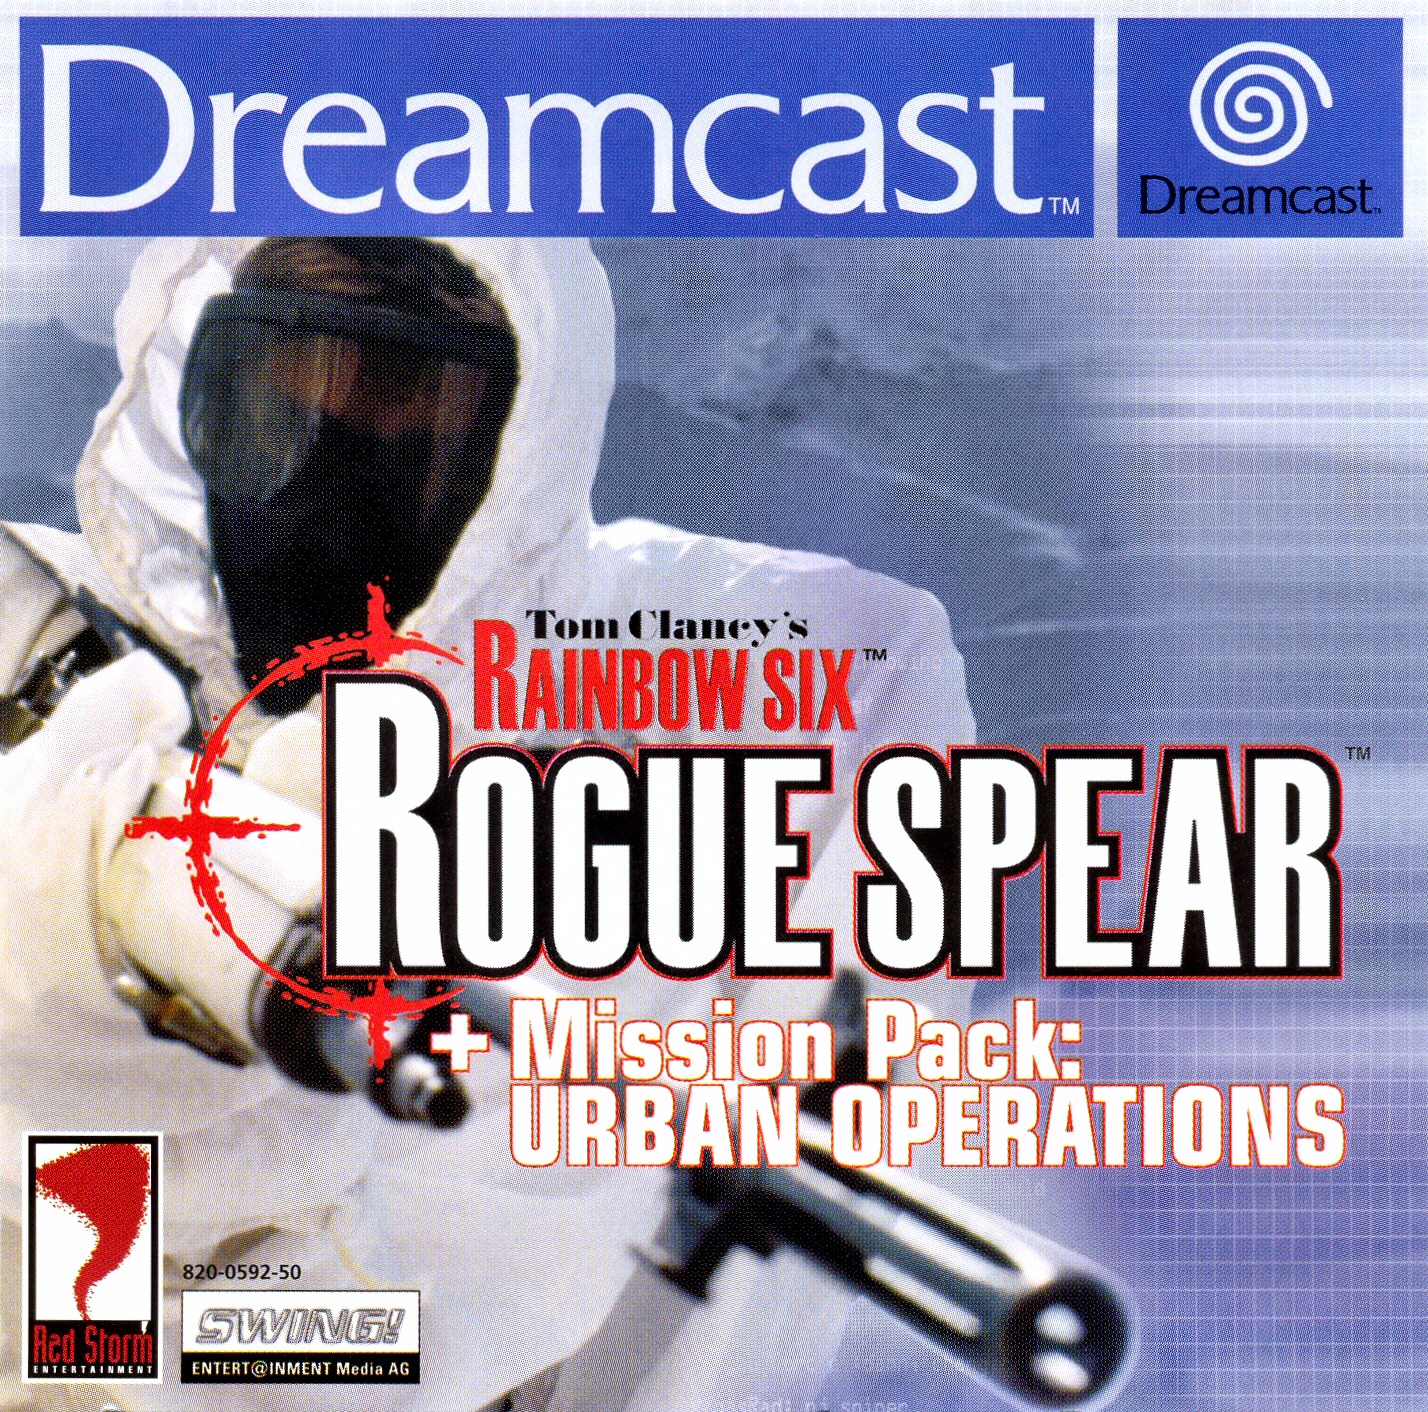 jaquette du jeu vidéo Rainbow Six : Rogue Spear